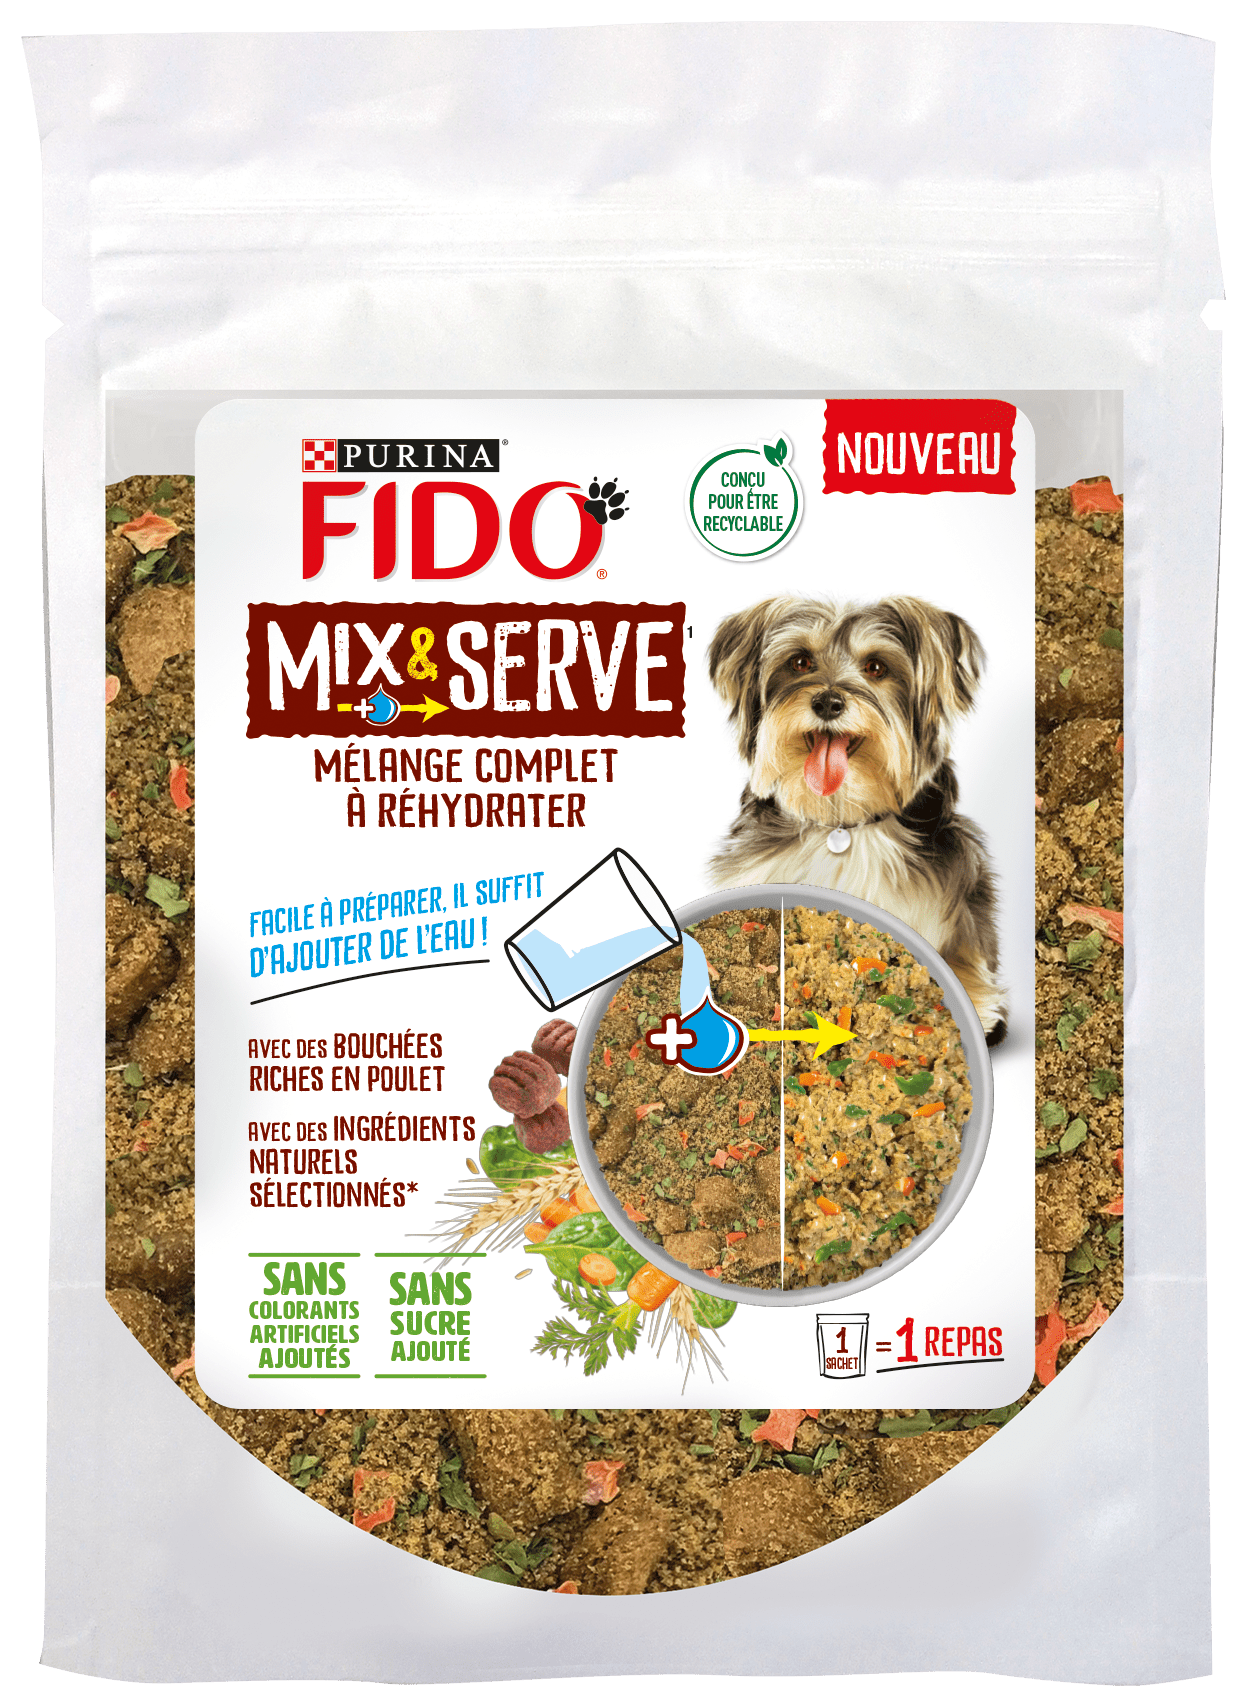 FIDO® Mix&Serve